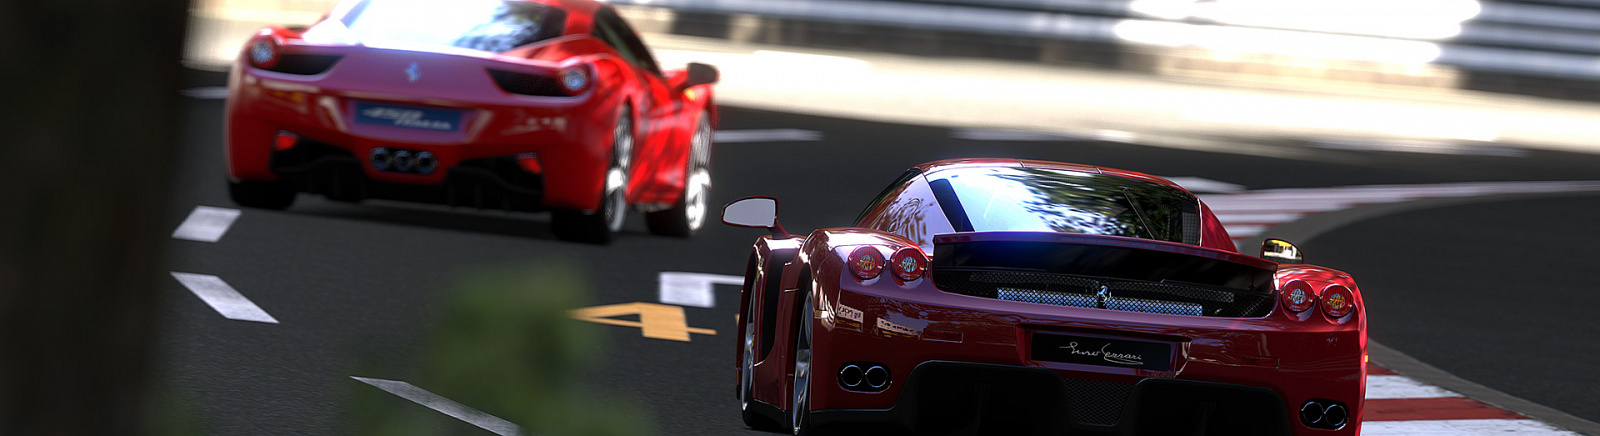 Дата выхода Gran Turismo 5 (GT5)  на PS3 в России и во всем мире